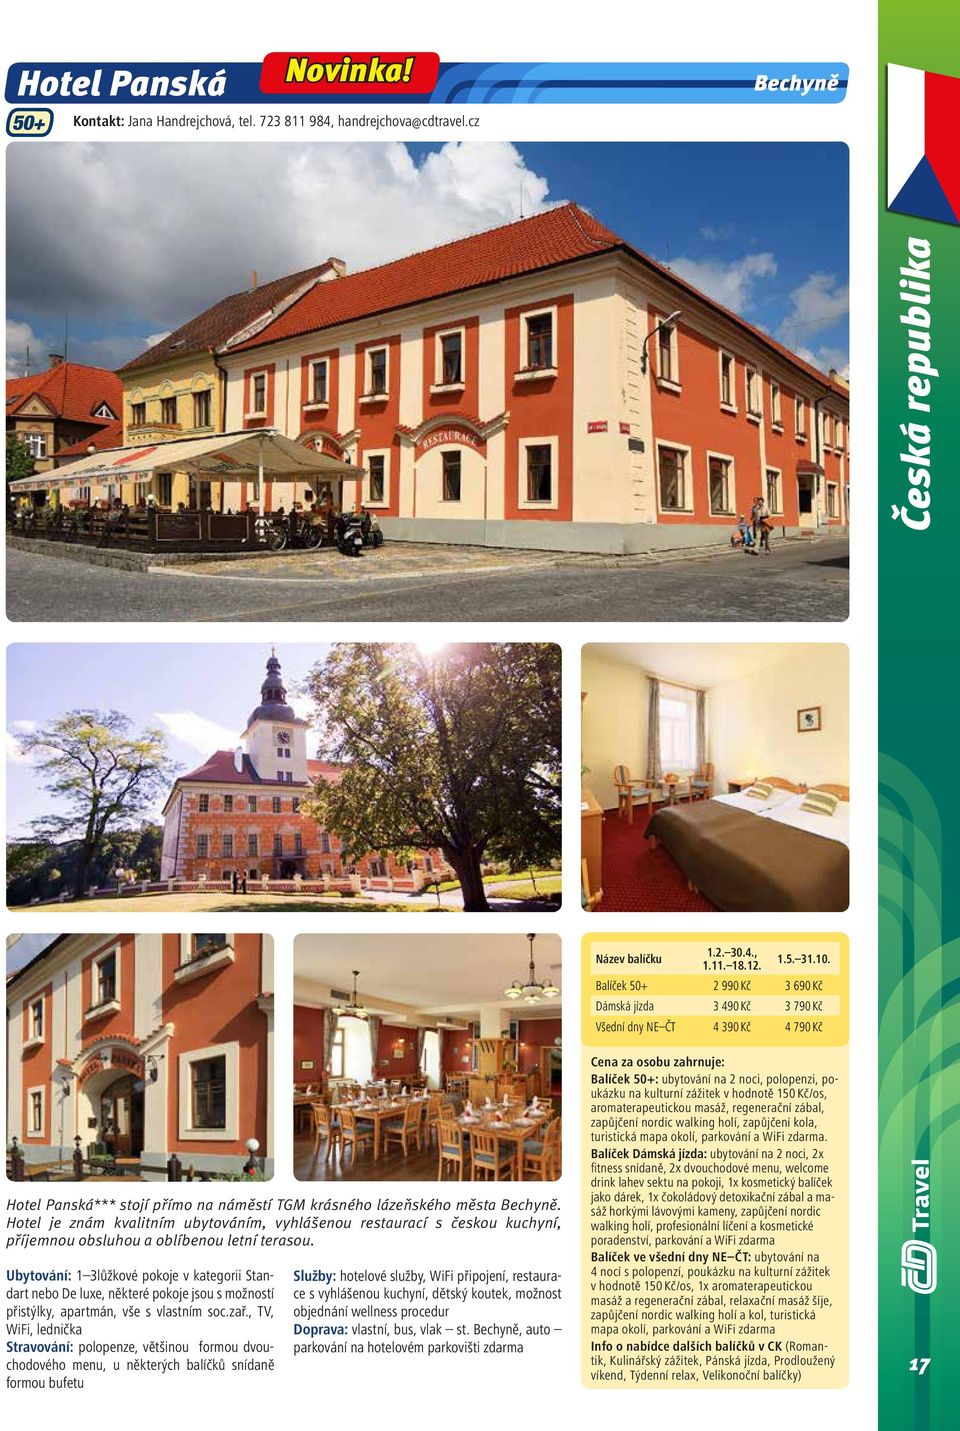 Hotel je znám kvalitním ubytováním, vyhlášenou restaurací s českou kuchyní, příjemnou obsluhou a oblíbenou letní terasou.